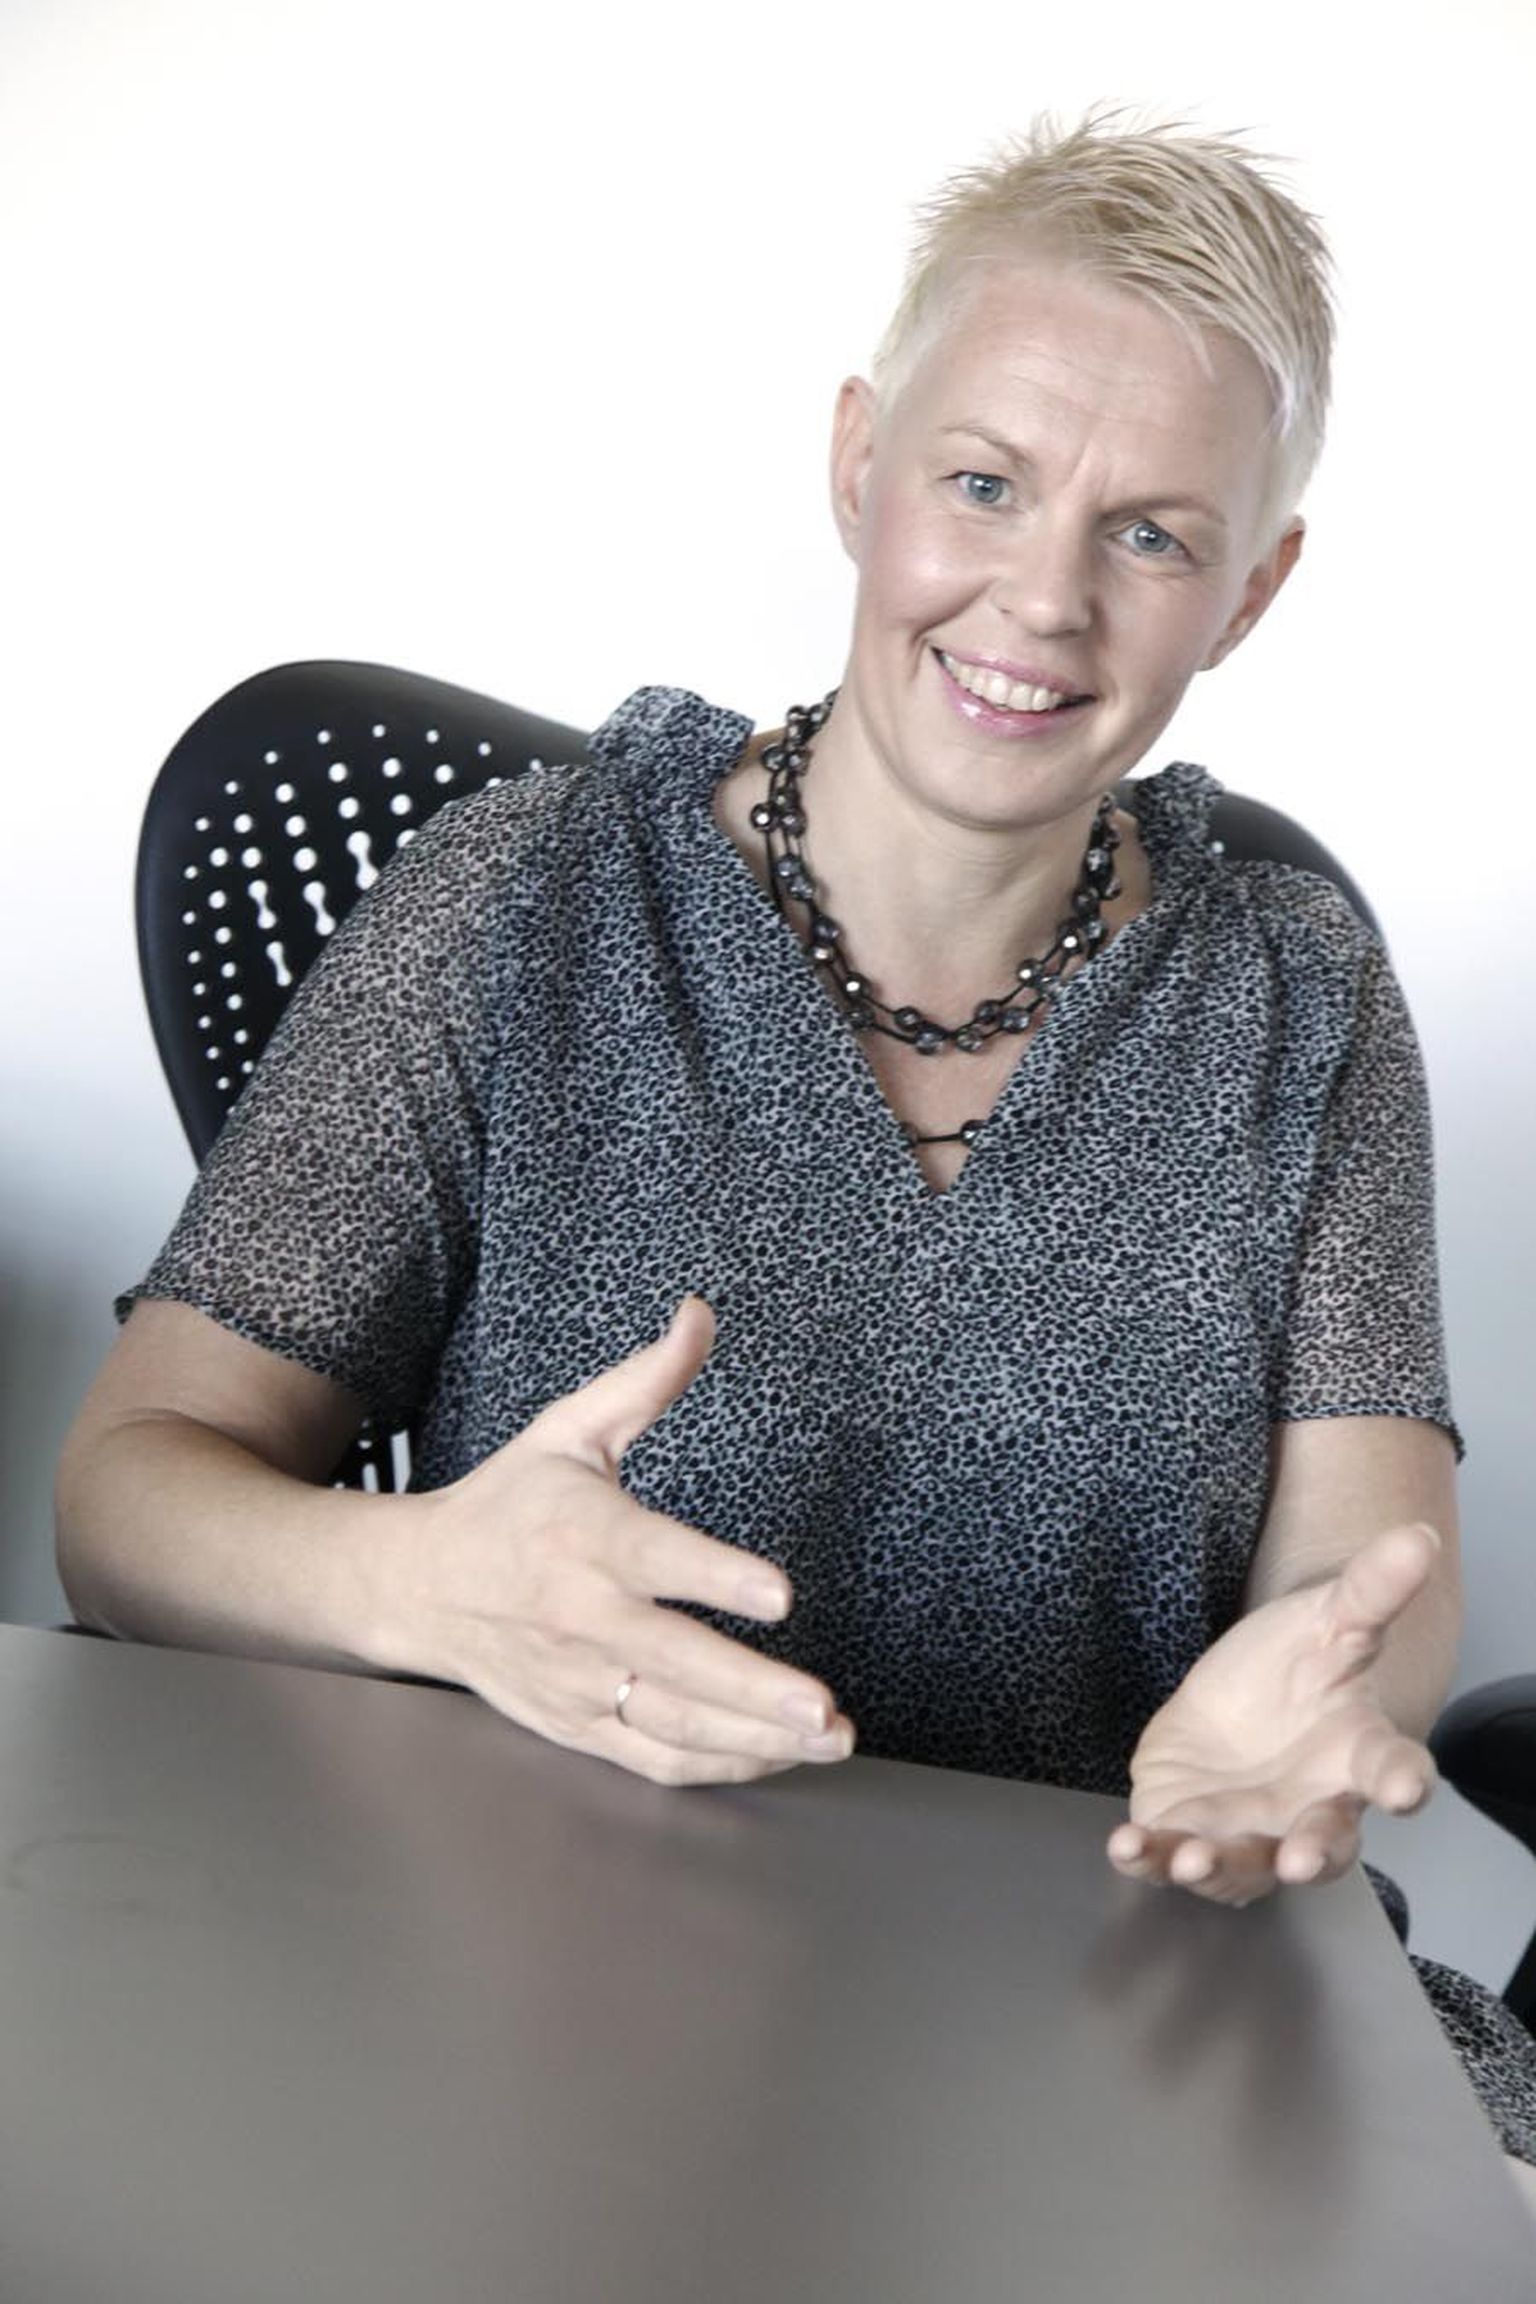 Eesti Disainikeskuse juhi Jane Oblikase sõnul on teenusedisainil Eestis suur potentsiaal.